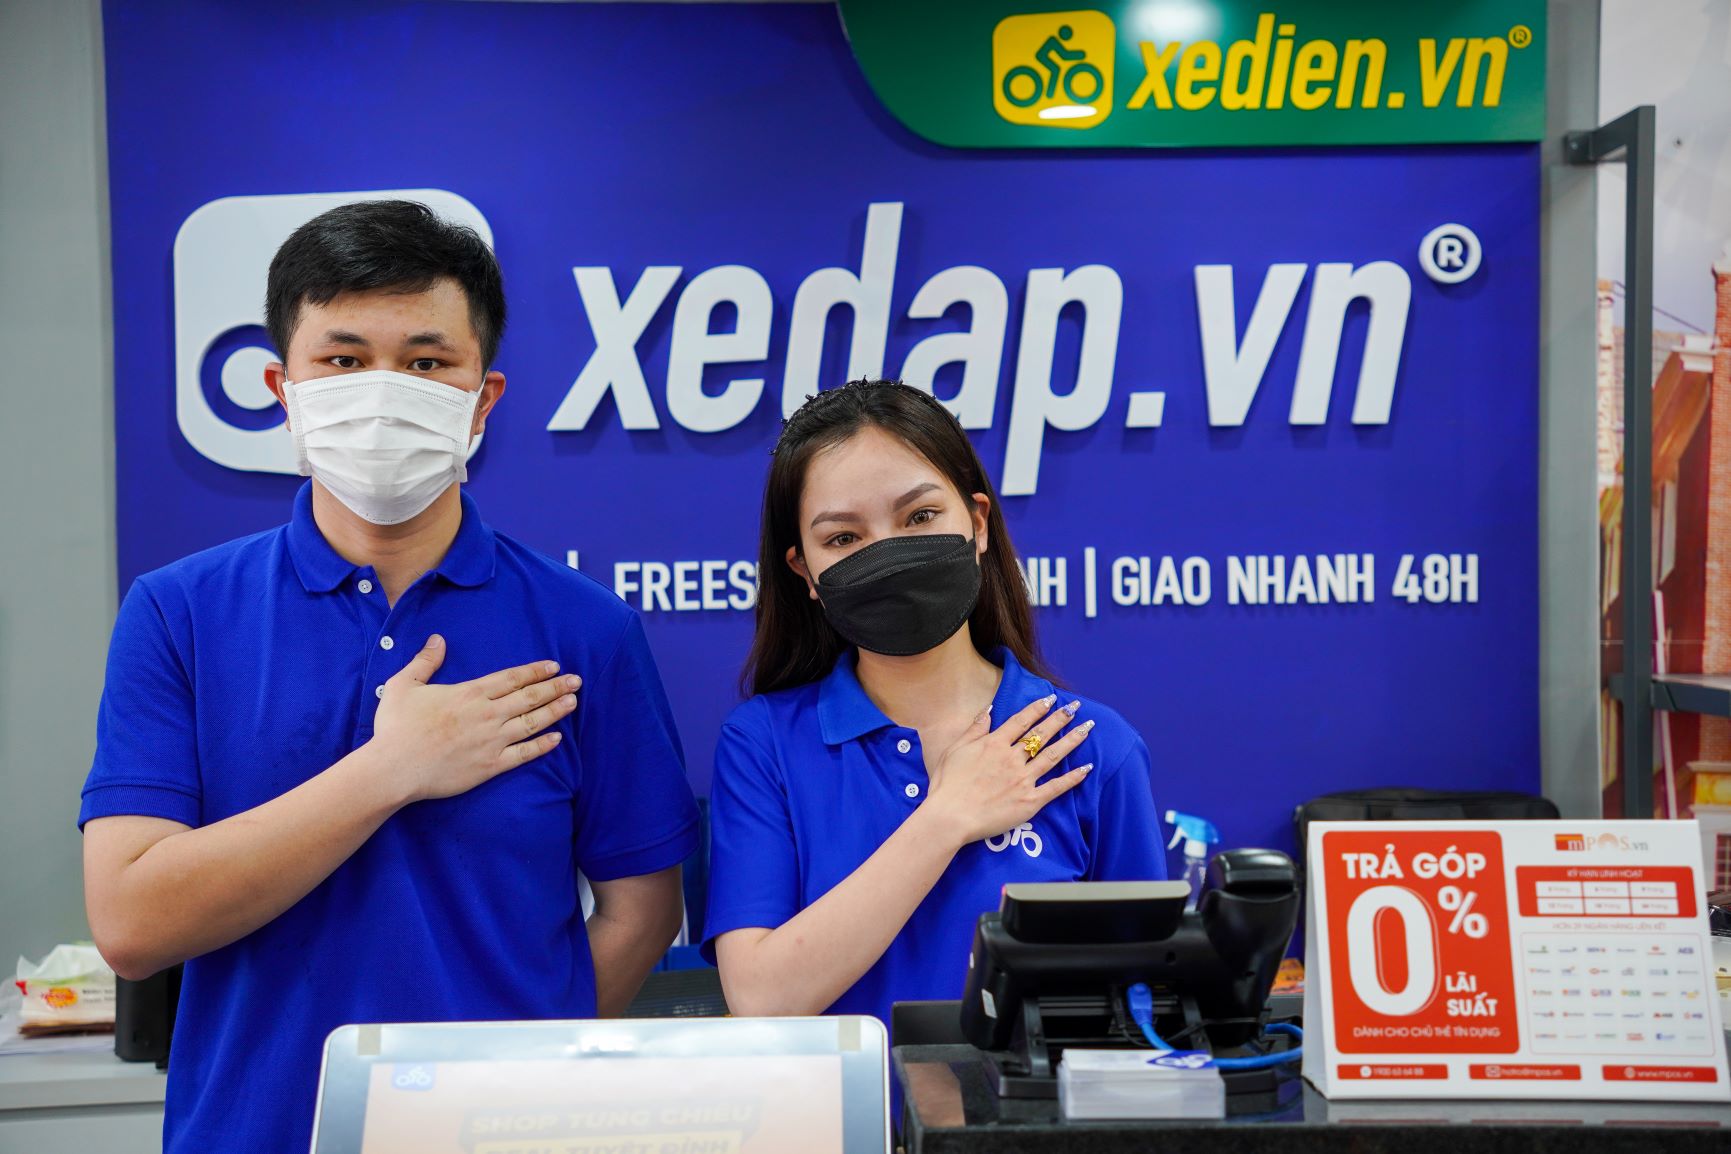 Cửa hàng Xedap.vn Phạm Hùng hân hạnh phục vụ quý khách 